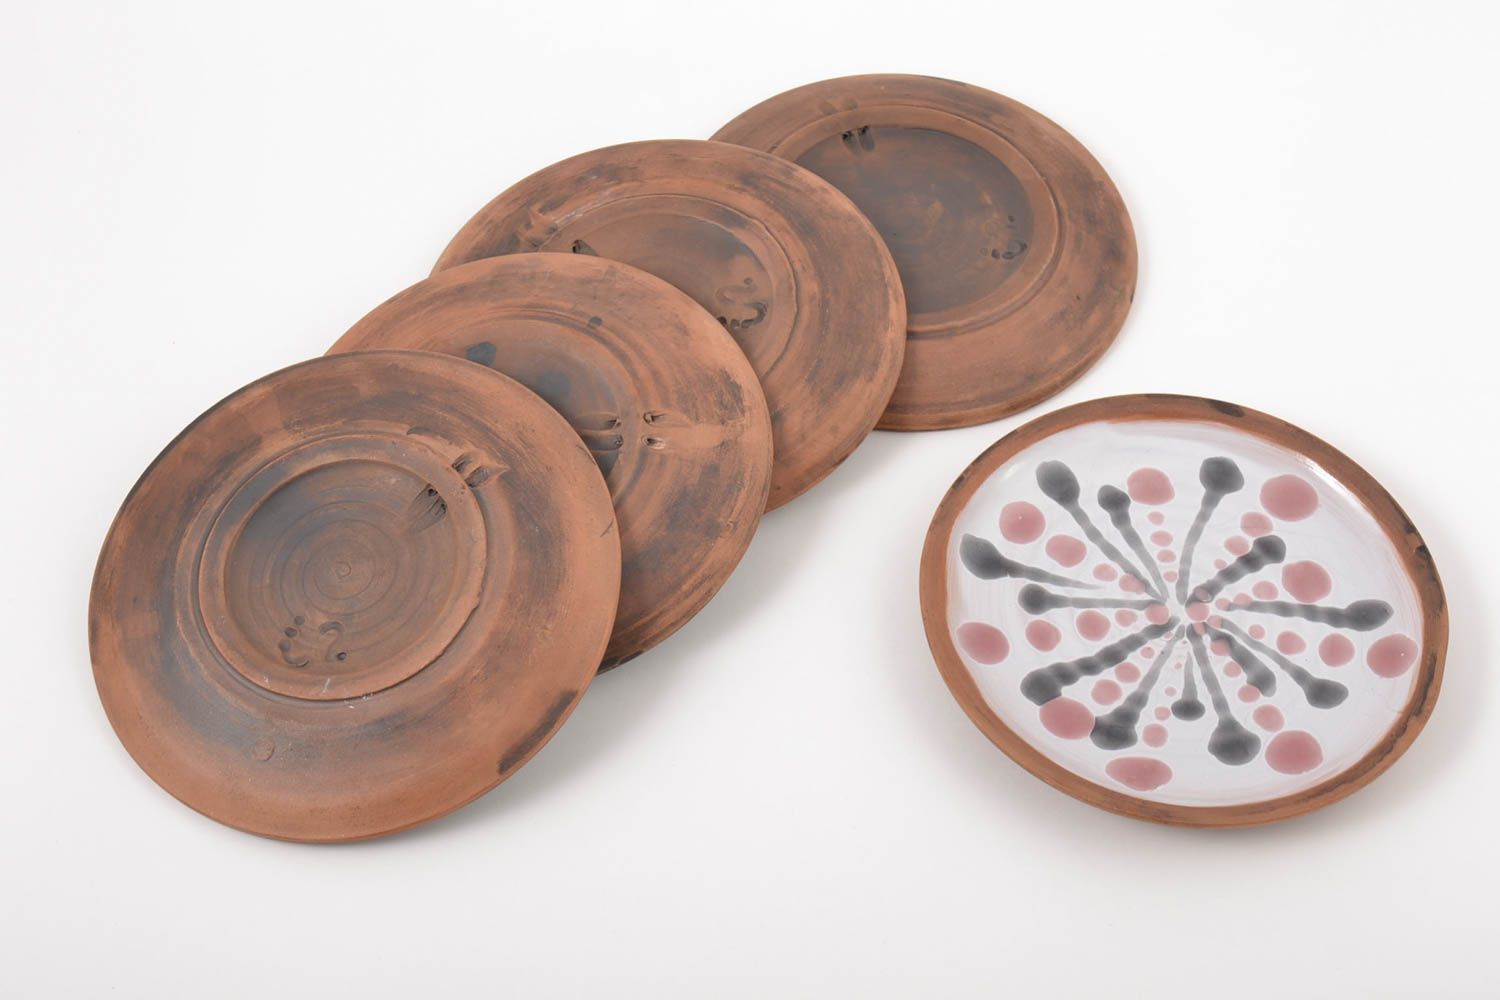 Platos de barro pintados hechos a mano juego de vajilla utensilios de cocina foto 4